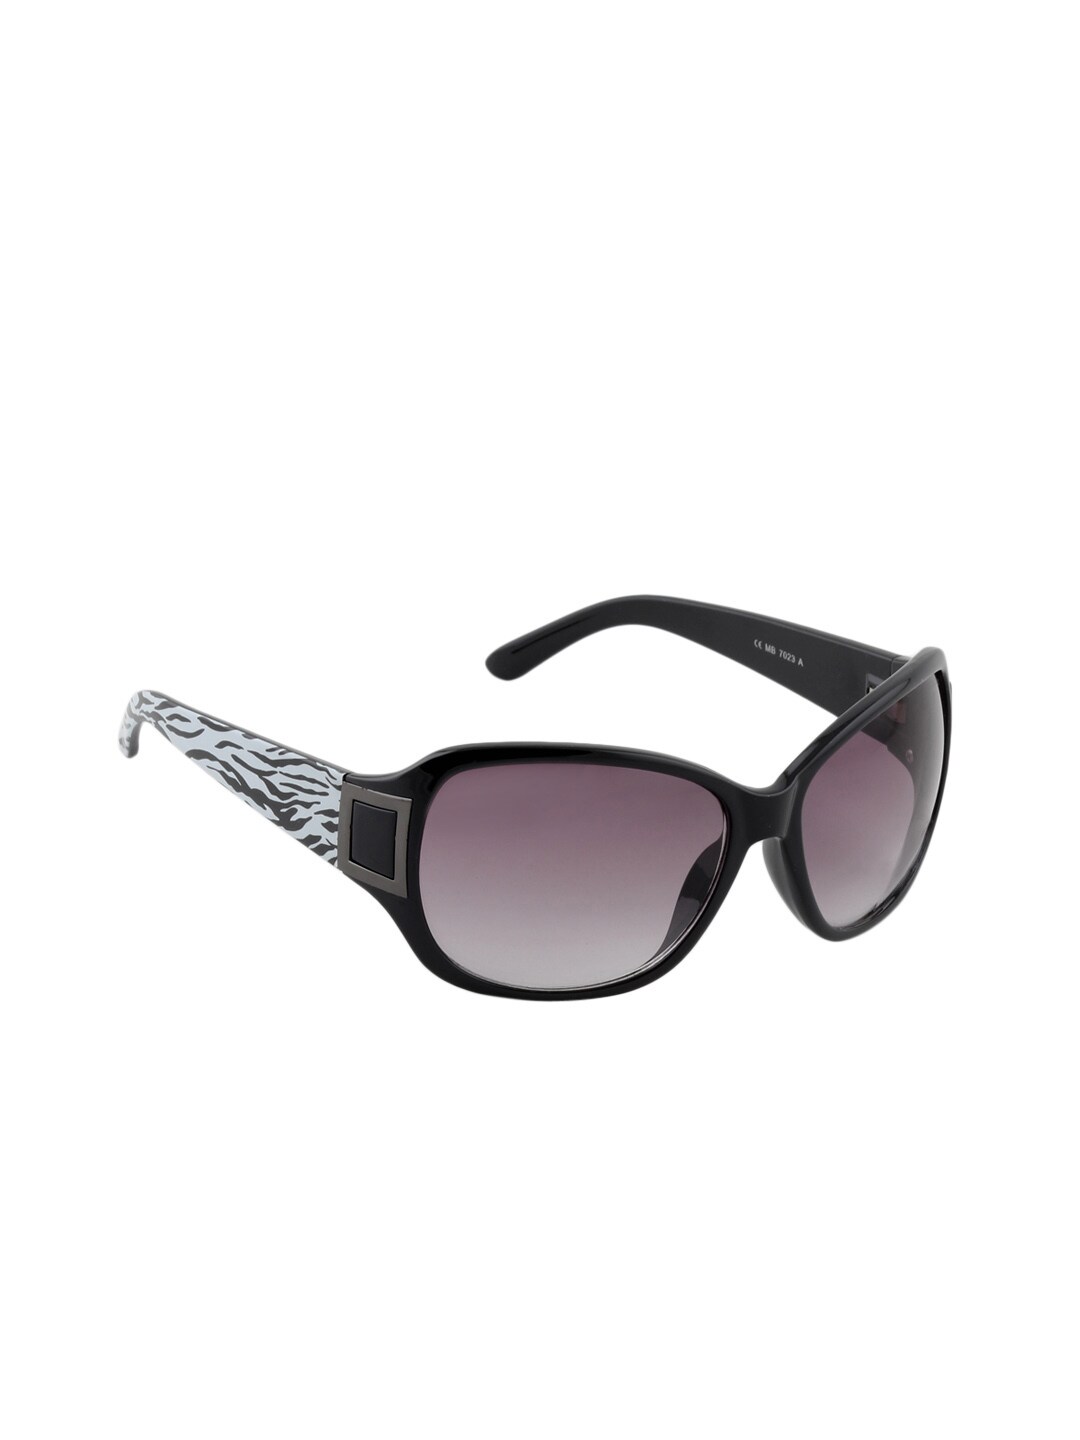 Miami Blues Women Sunglasses